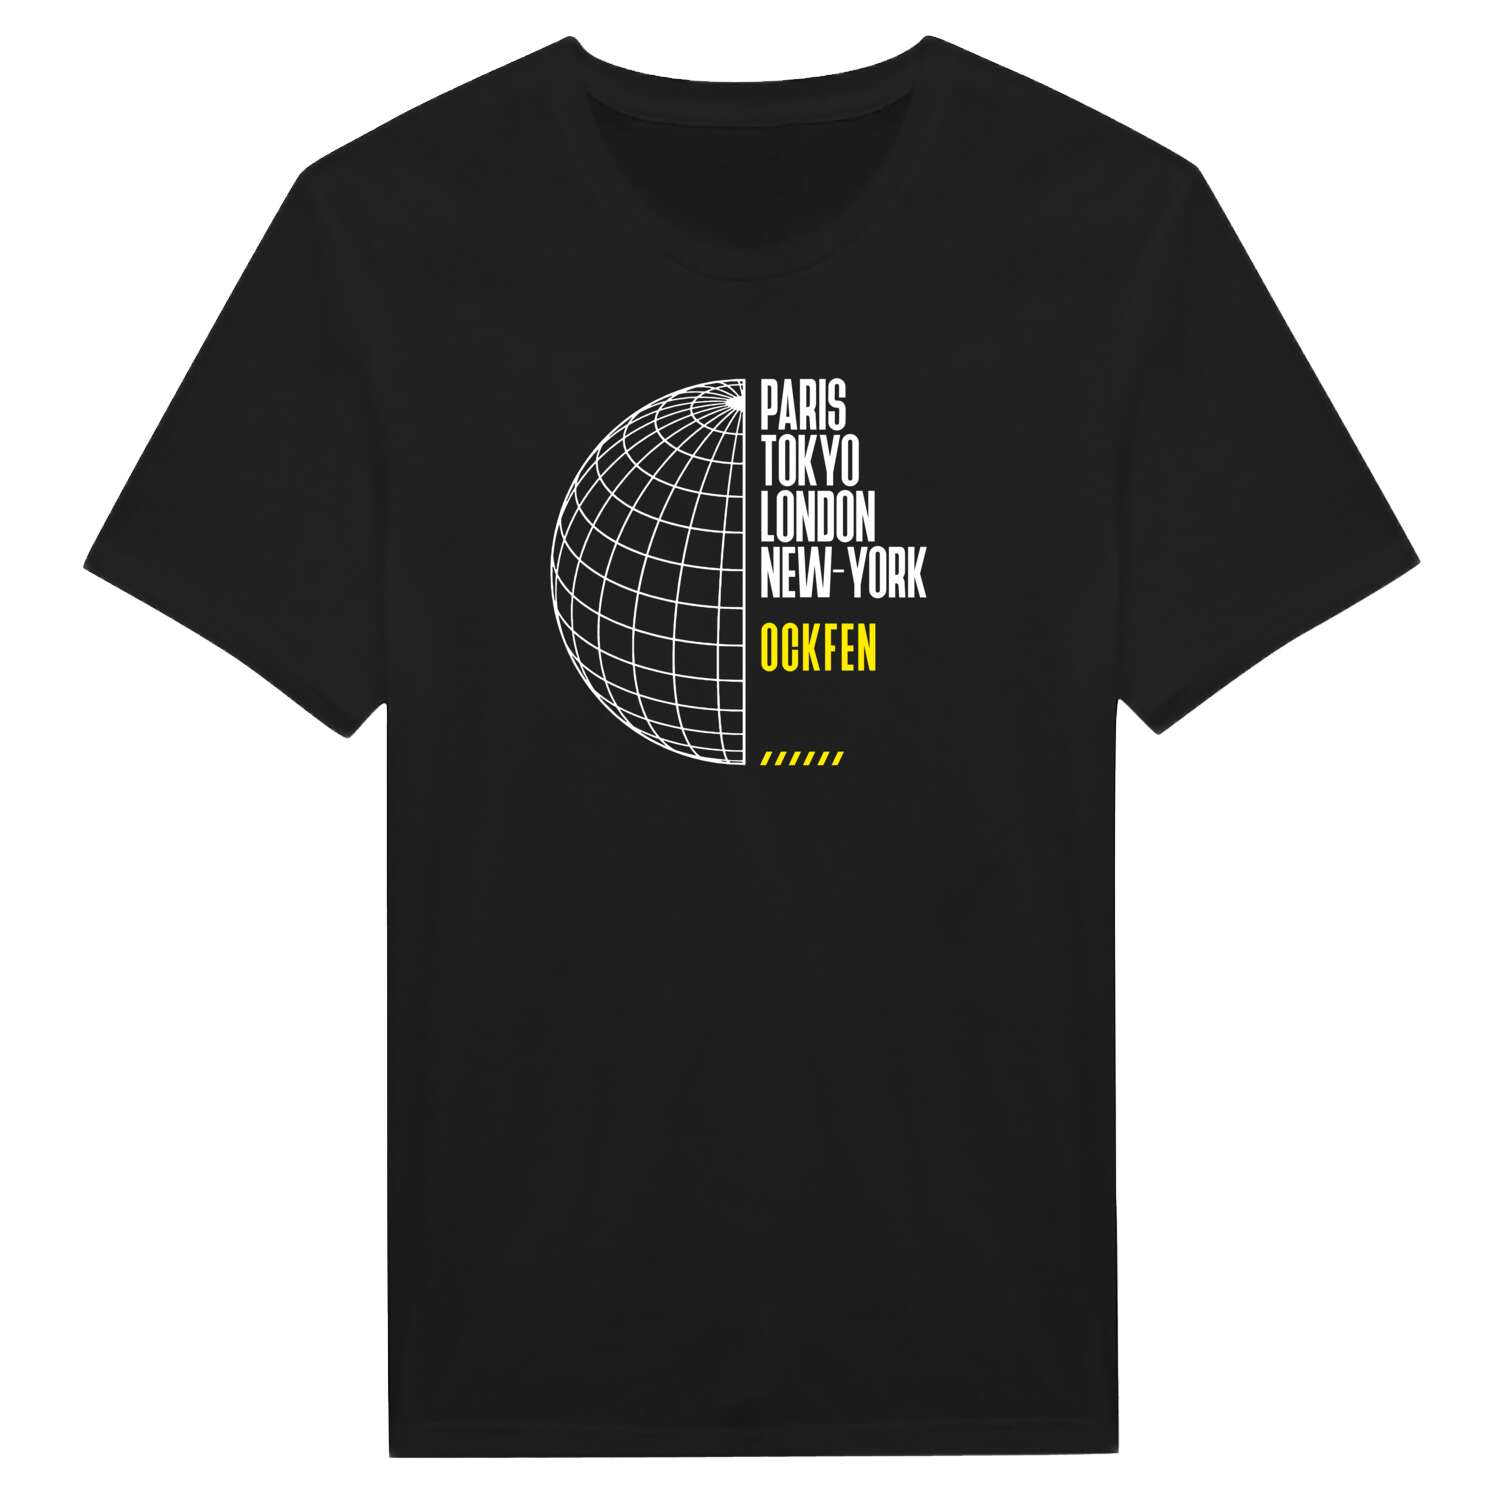 Ockfen T-Shirt »Paris Tokyo London«